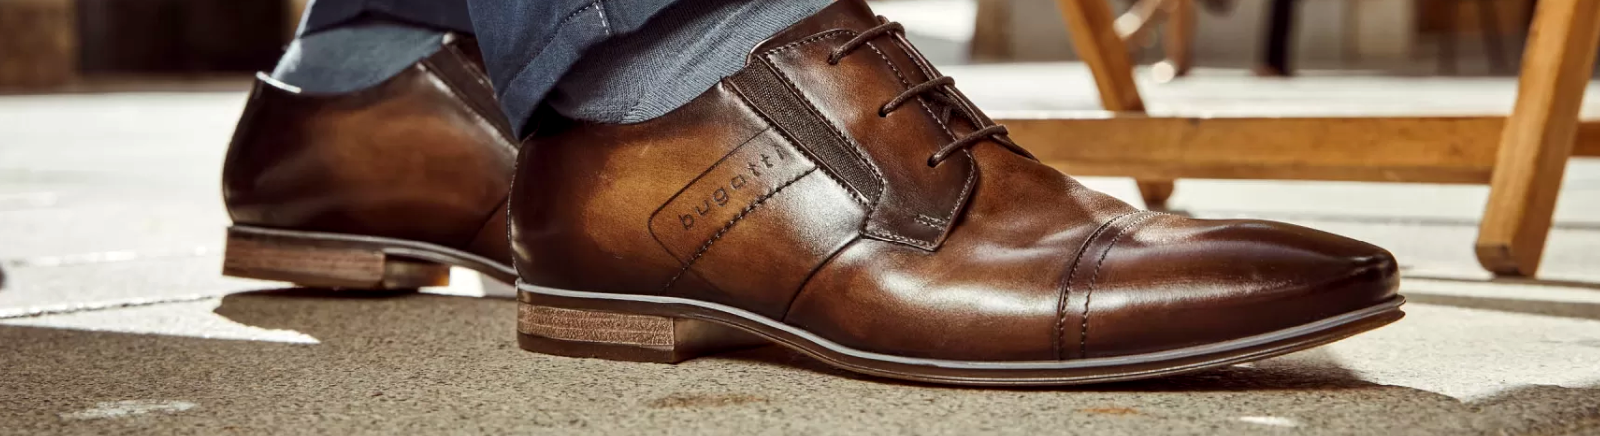 Bugatti Schuhe für Herren/Herrenschuhe online kaufen | GISY Shop